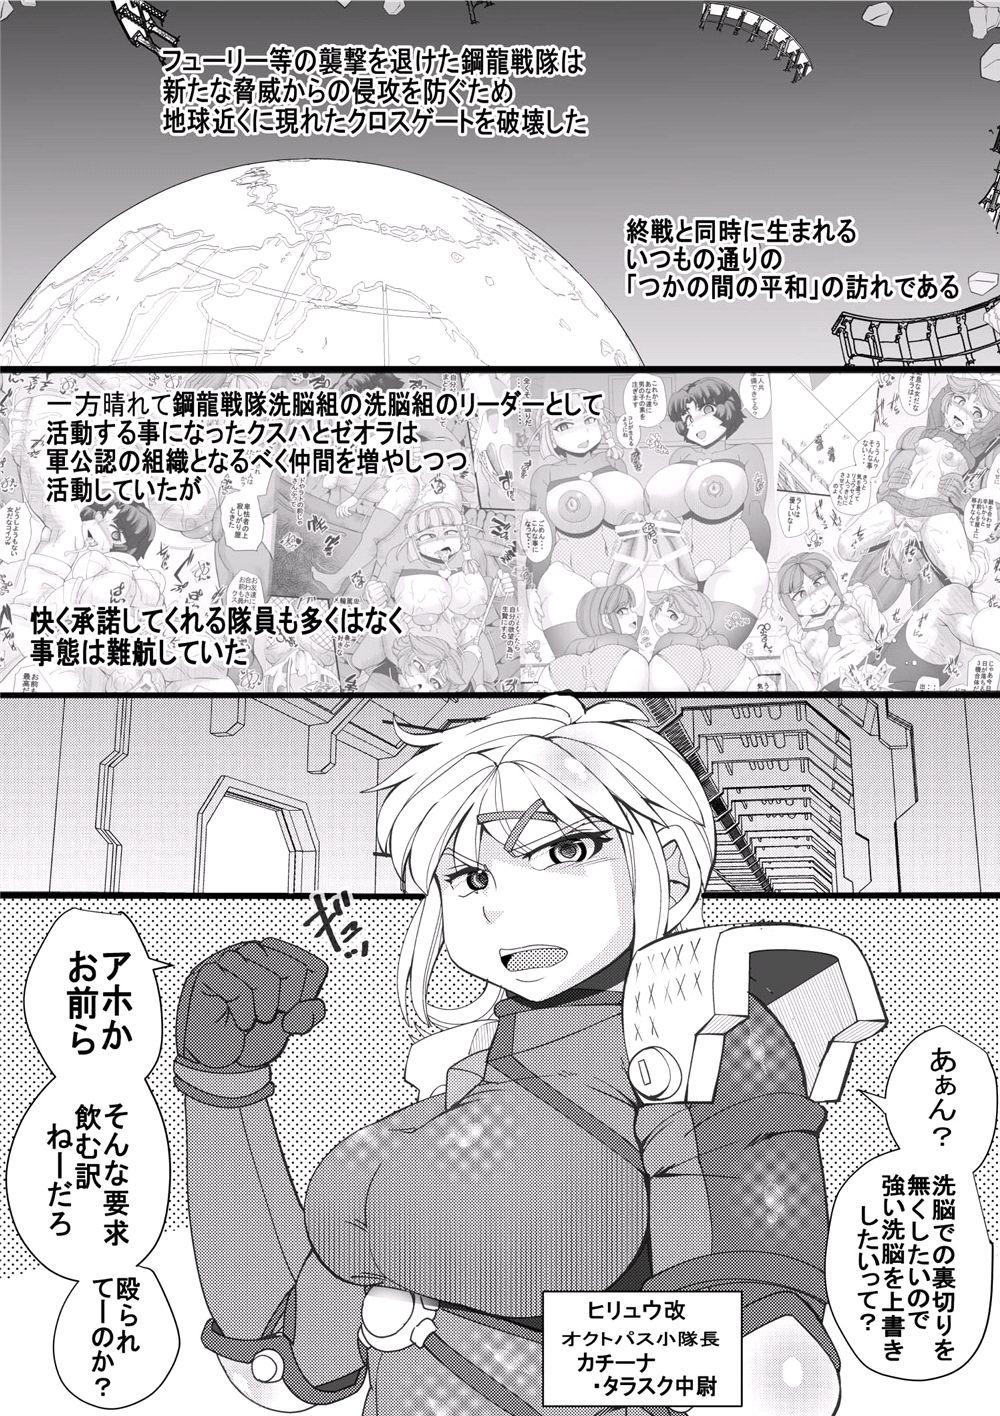 Nylons [Seishimentai (Syouryuupen)] Dai-3-ji SUPER OG (Super Robot Taisen) - Super robot wars Cartoon - Page 3